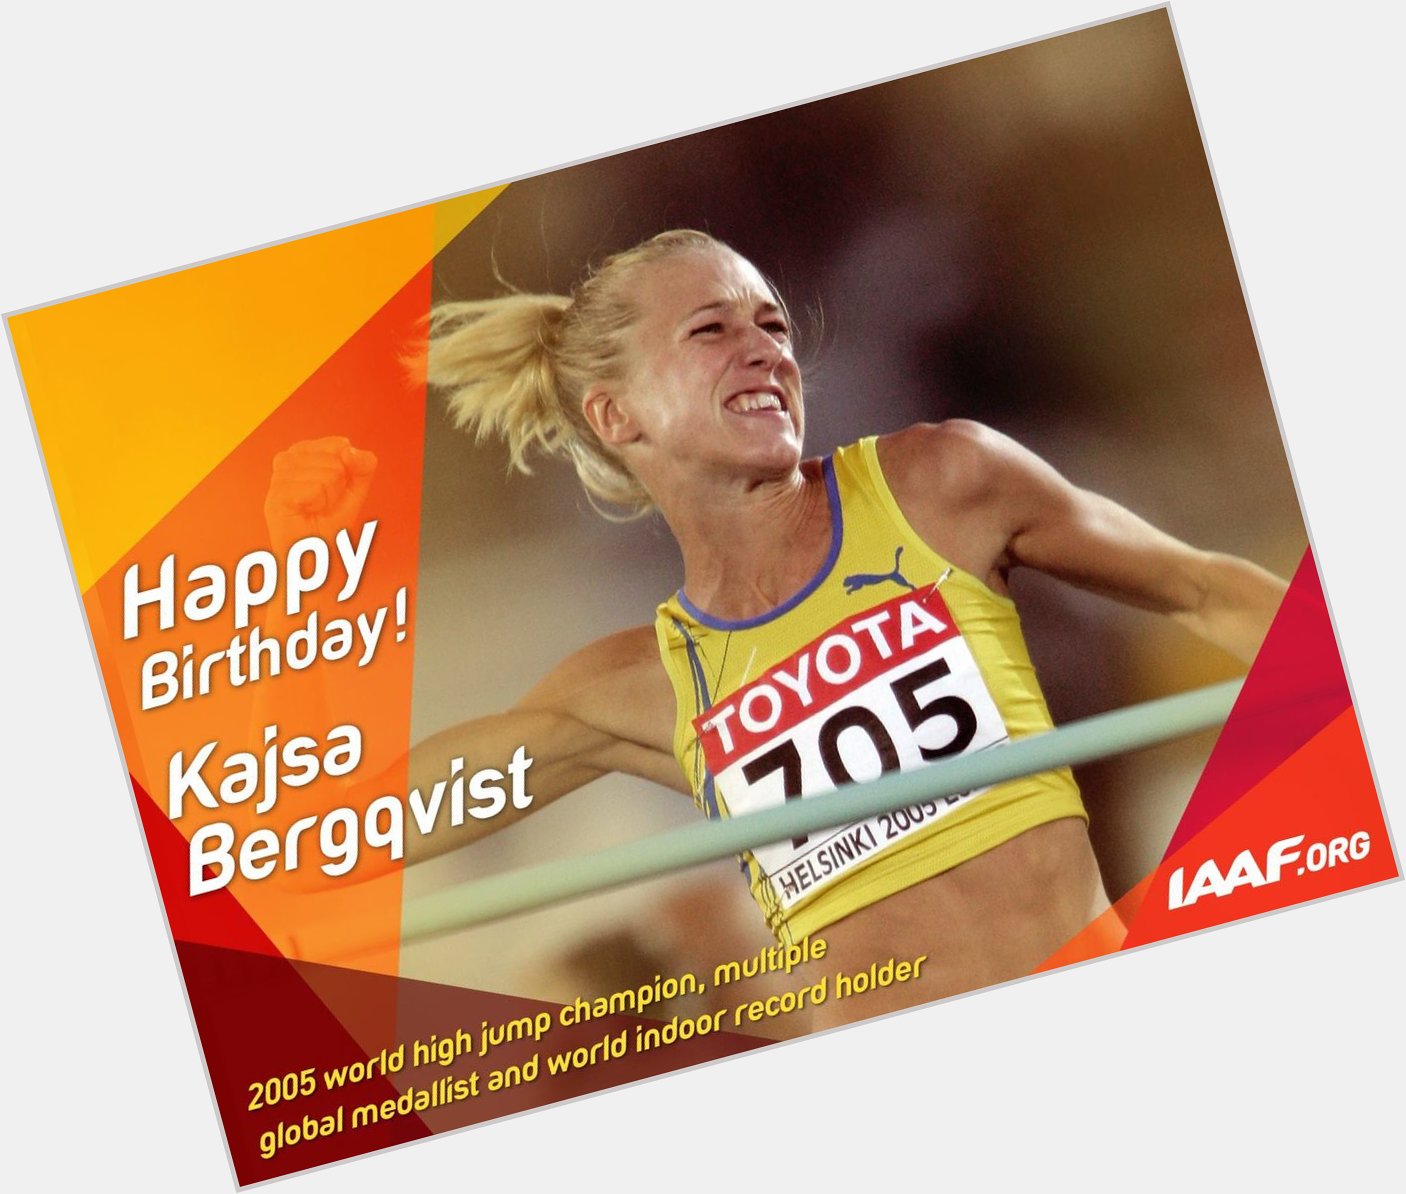 Happy birthday to the great Kajsa Bergqvist! 